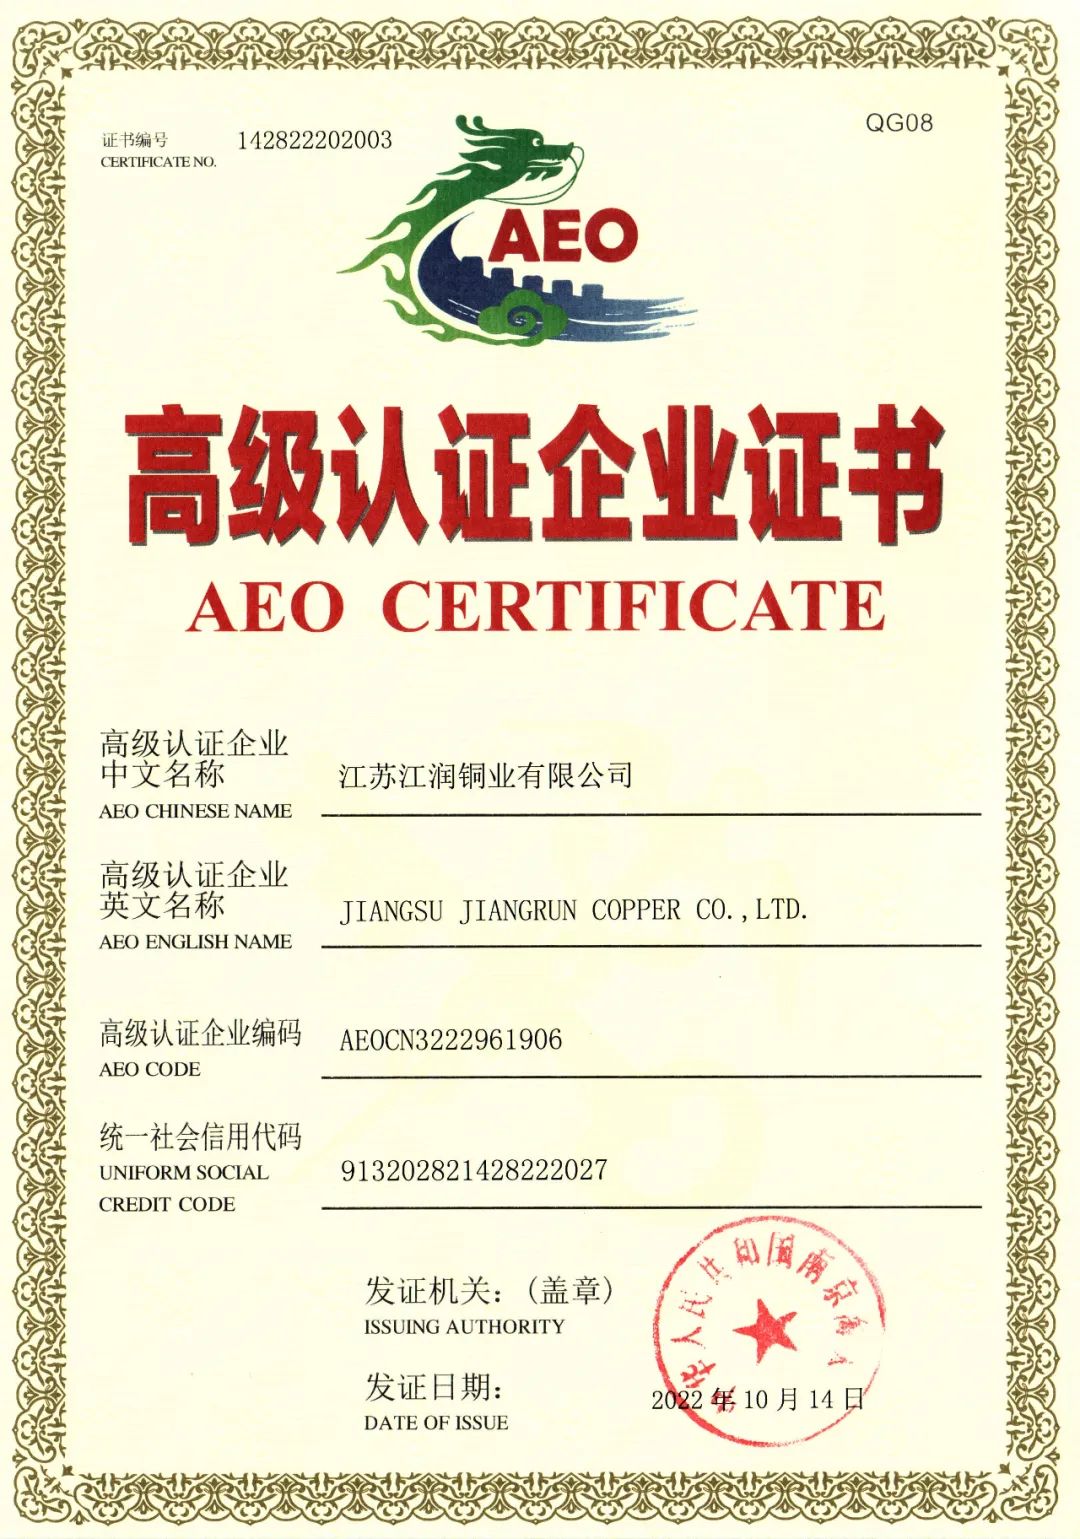 江润铜业获评“AEO高级认证企业”